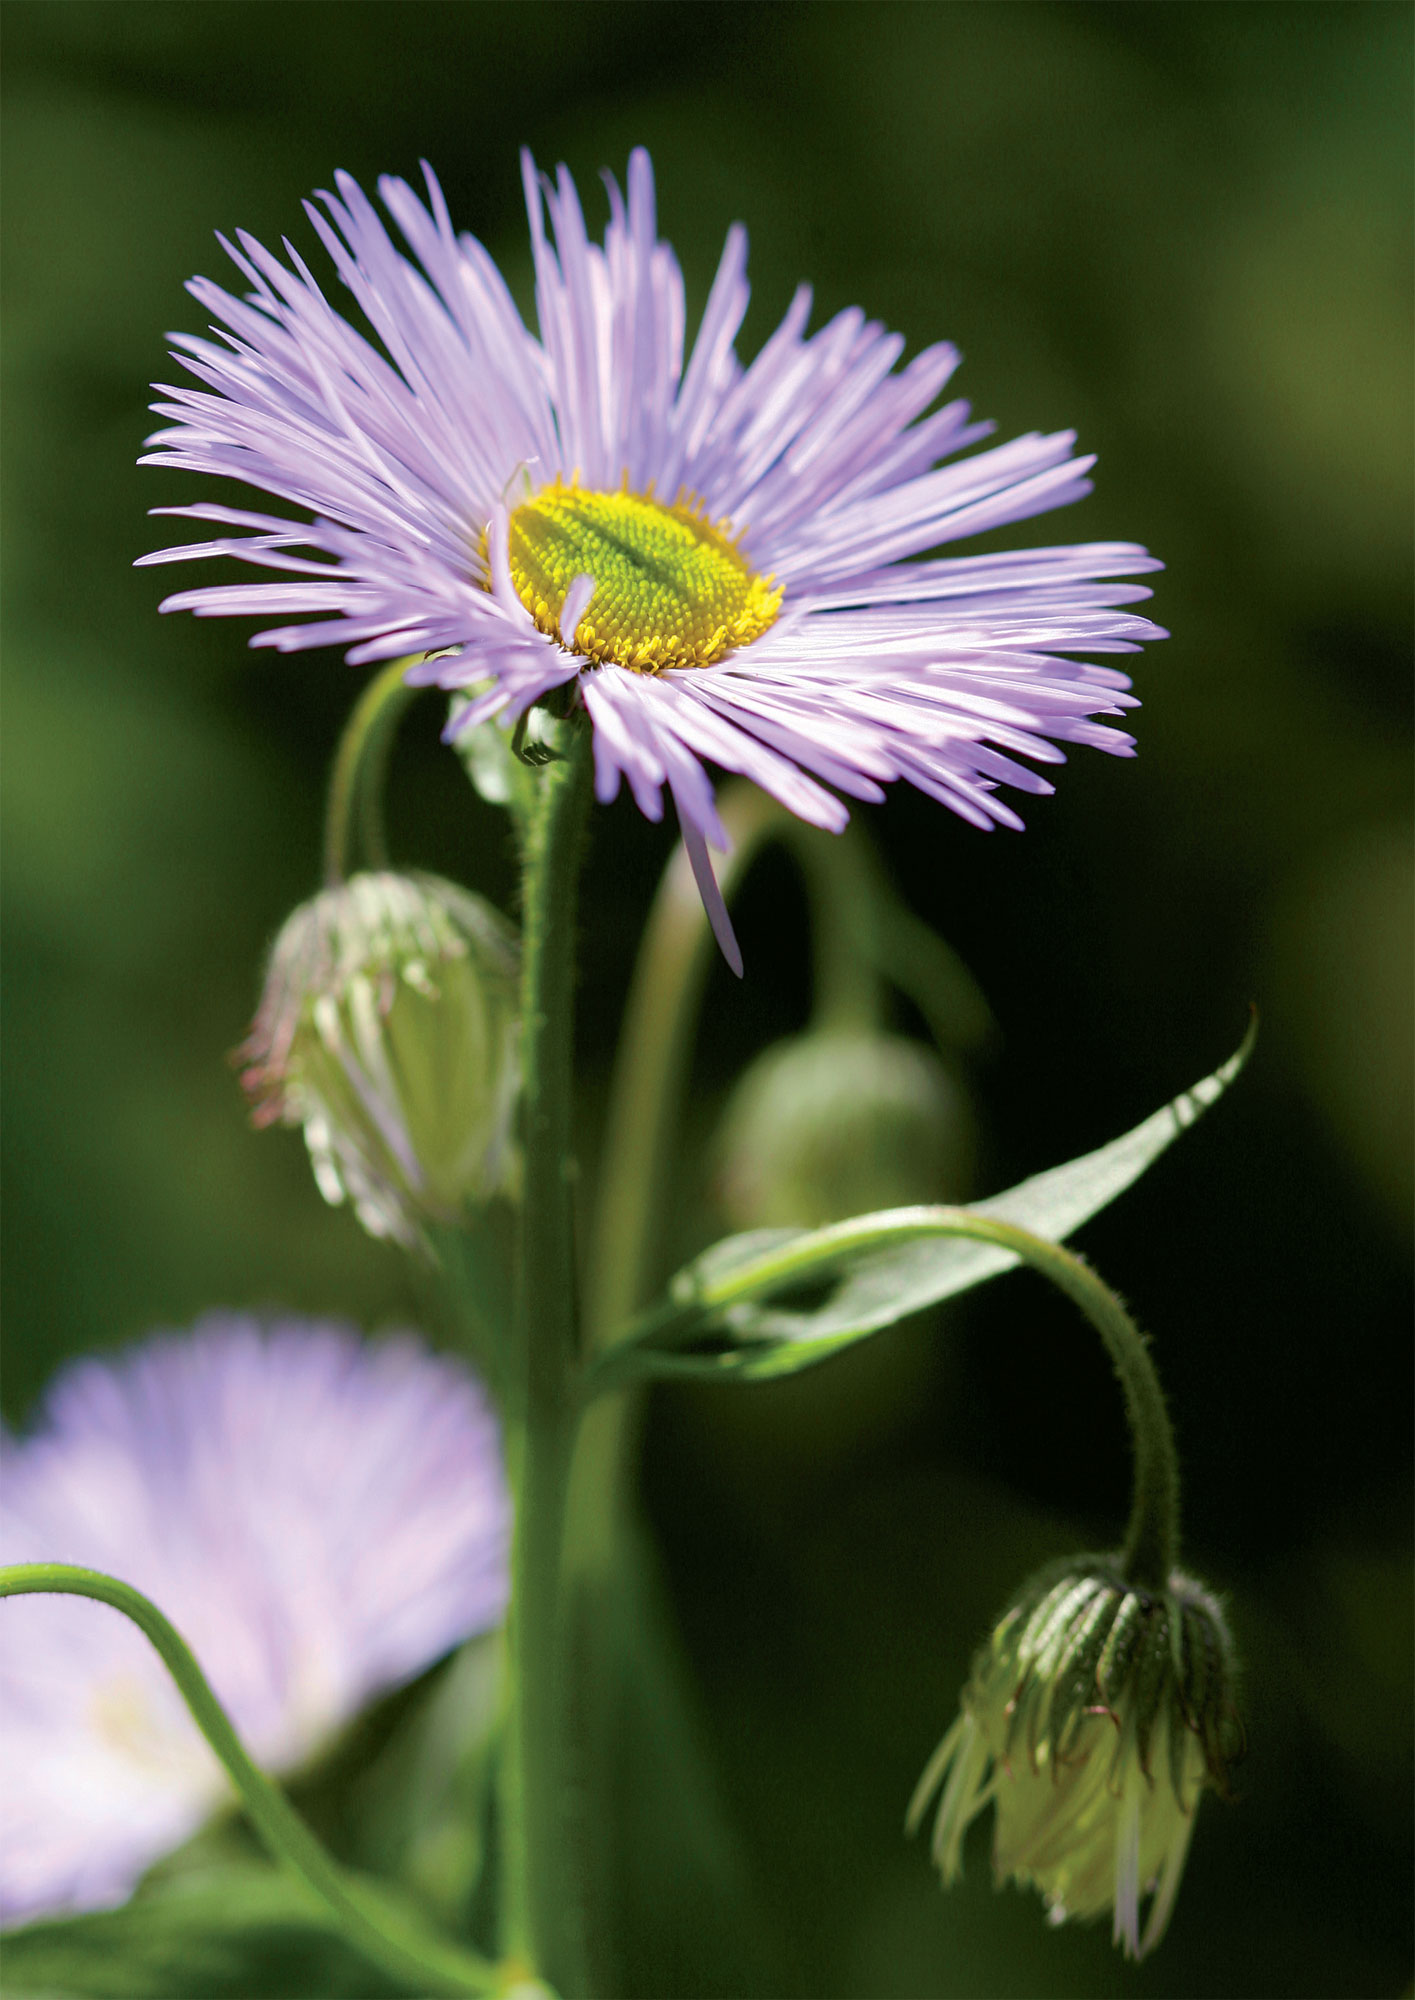 Helppohoitoisen jalokallioisen hennon violetteja kukkia riittää lähes koko kesäkaudeksi ja kimppuihin kerättäviksi.